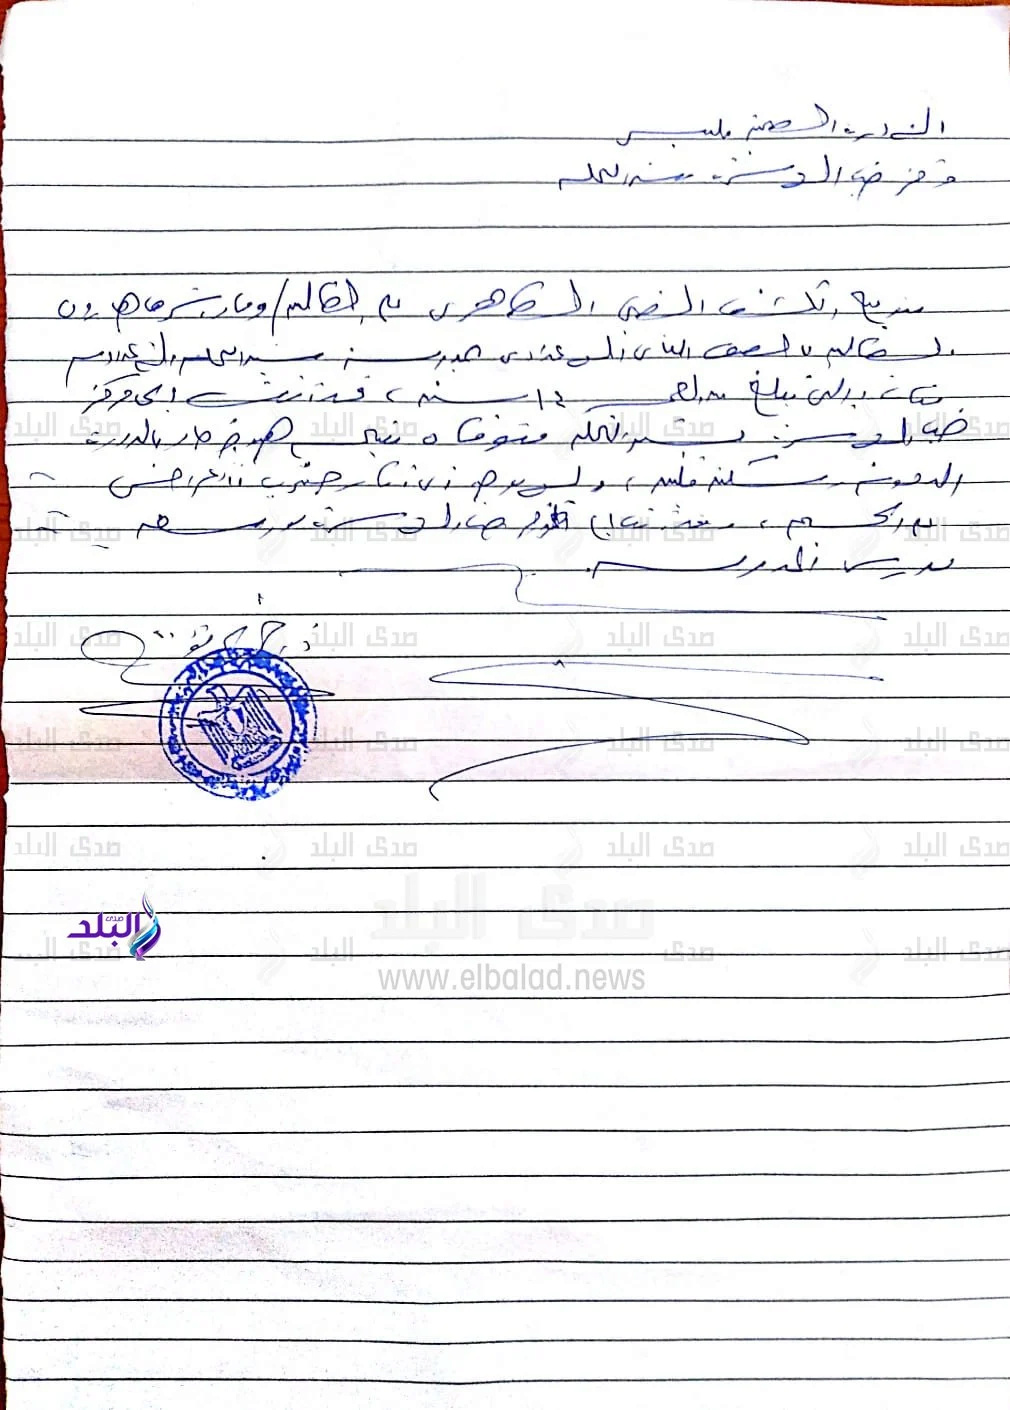 وفاة طالبة بـ "سكته قلبية" داخل مدرسة شبرا النخلة الإعدادية بادارة بلبيس 712_we10